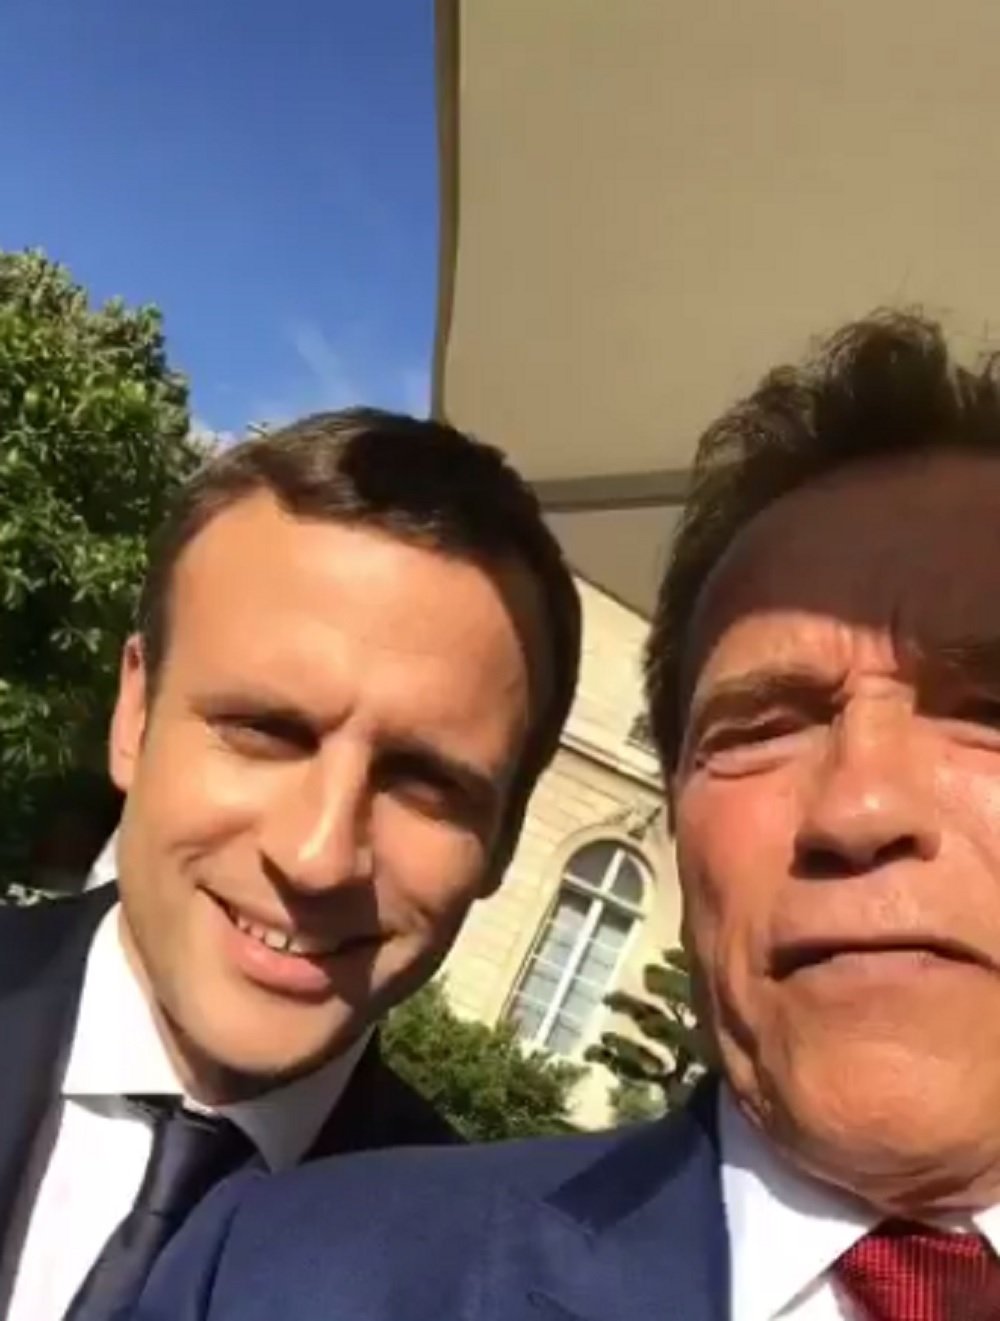 El videoselfie conjunto de Arnold Schwarzenegger y Emmanuel Macron